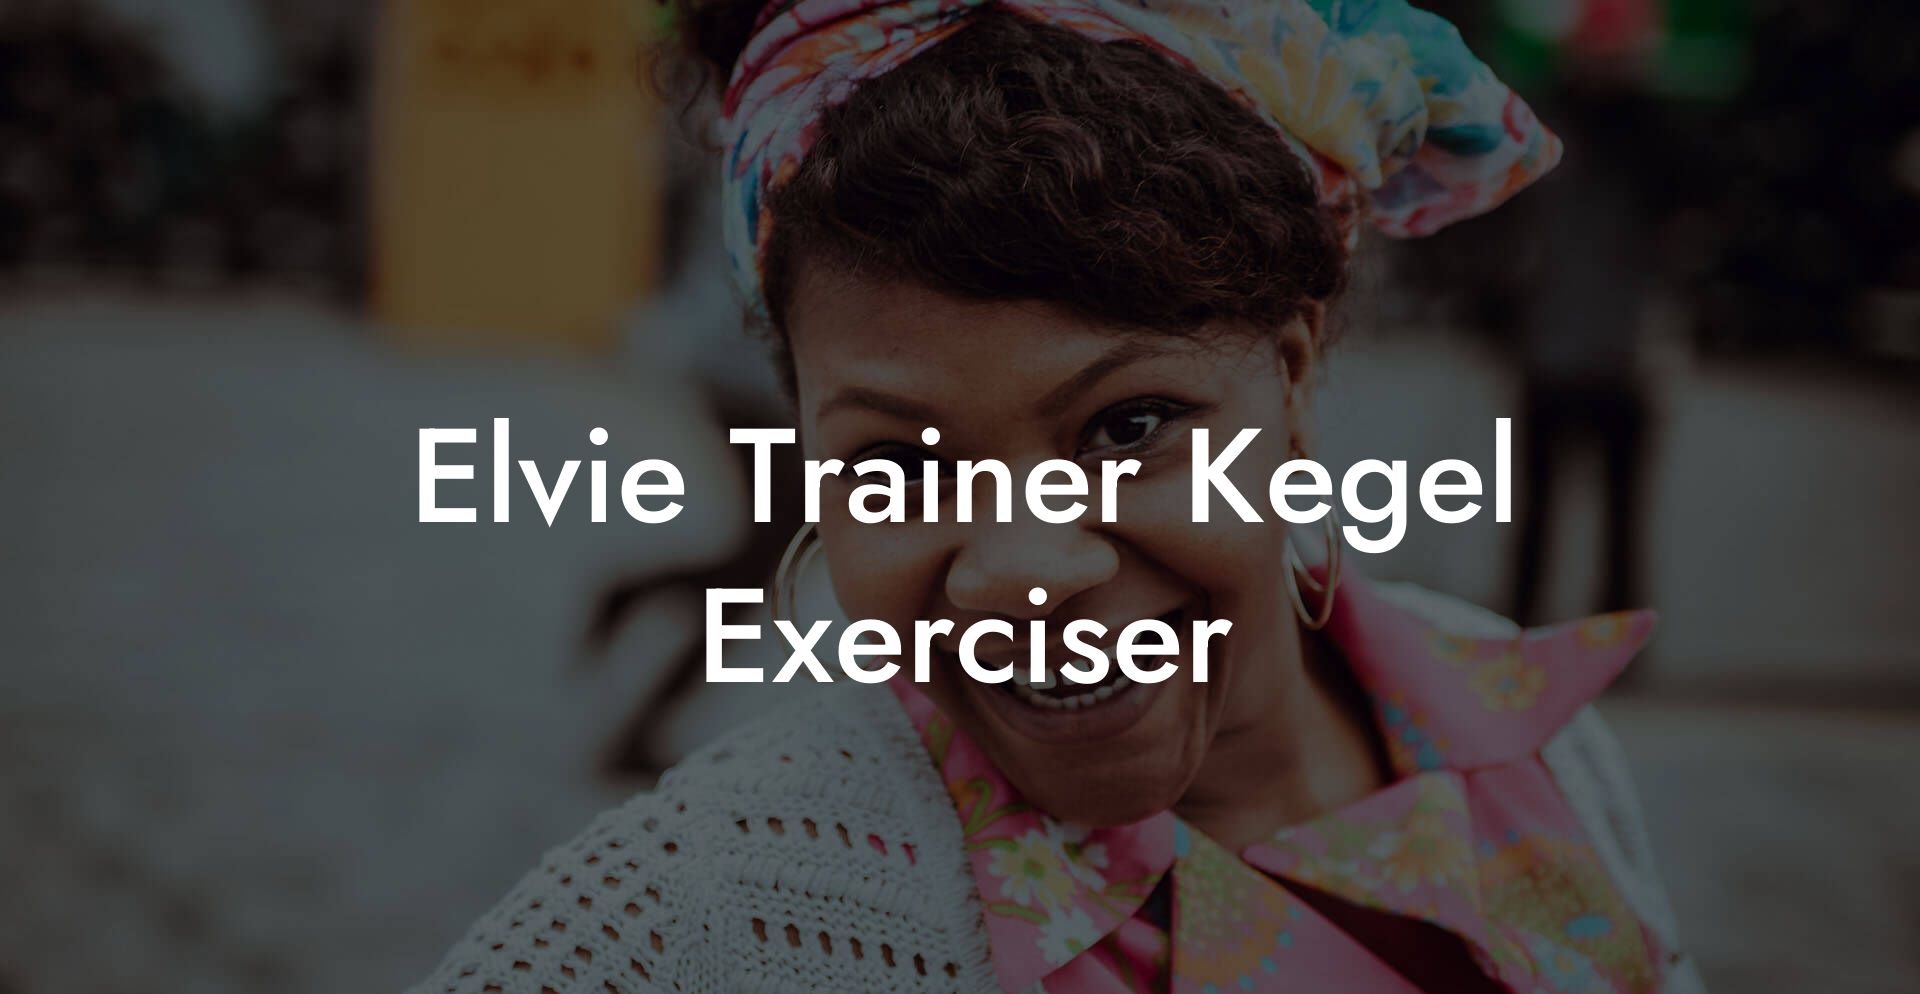 Elvie Trainer Kegel Exerciser